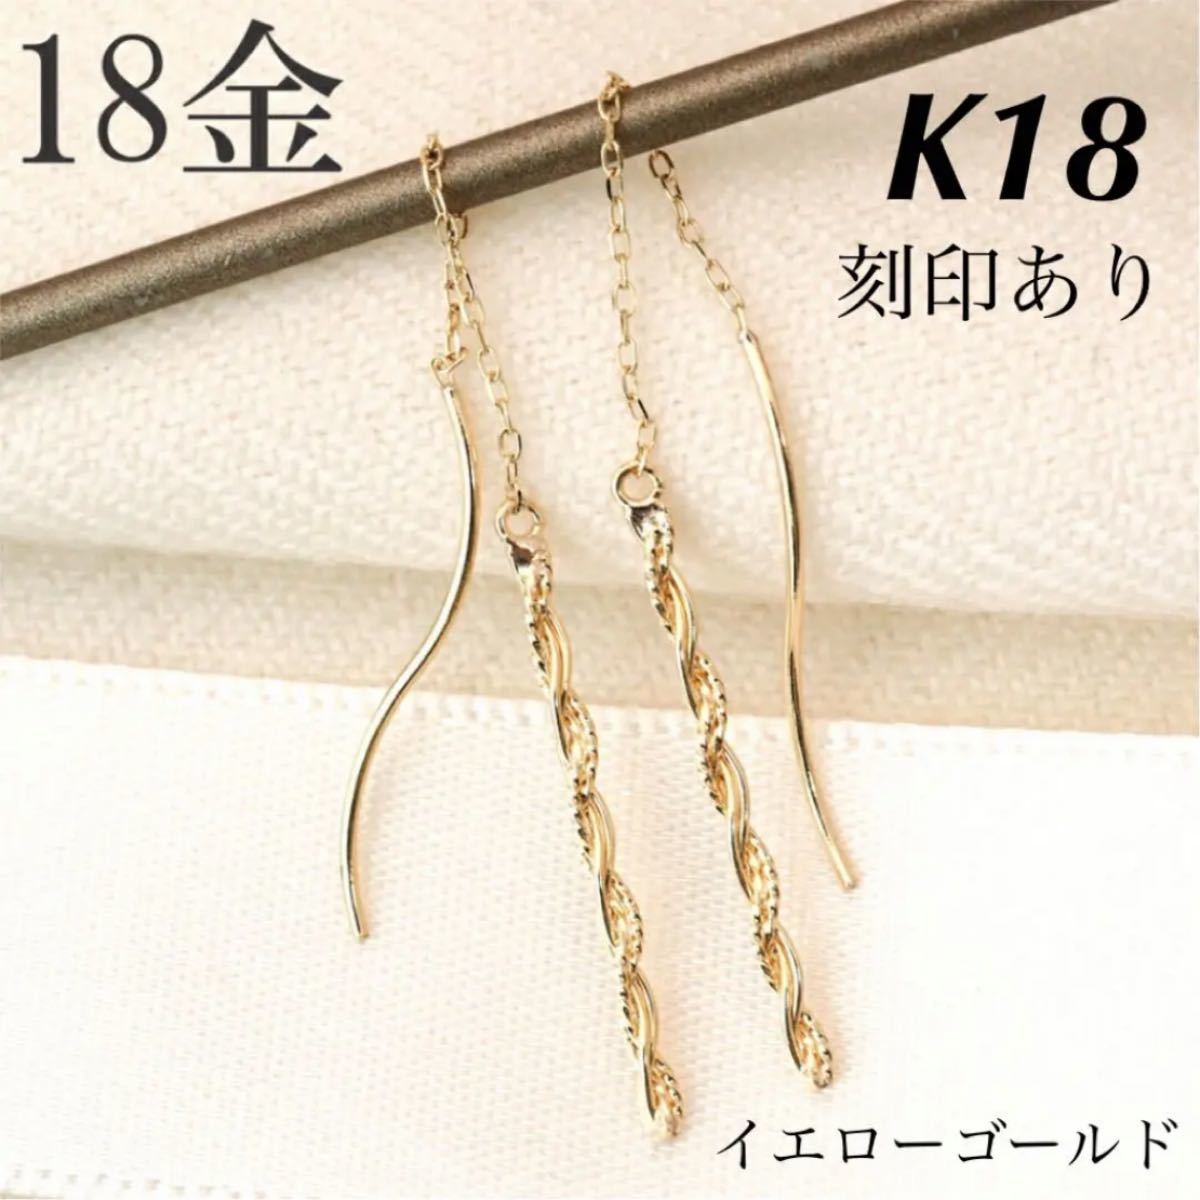 新品 K18 イエローゴールド ロングピアス  アメリカンピアス 18金ピアス 刻印あり 上質 日本製 ペア